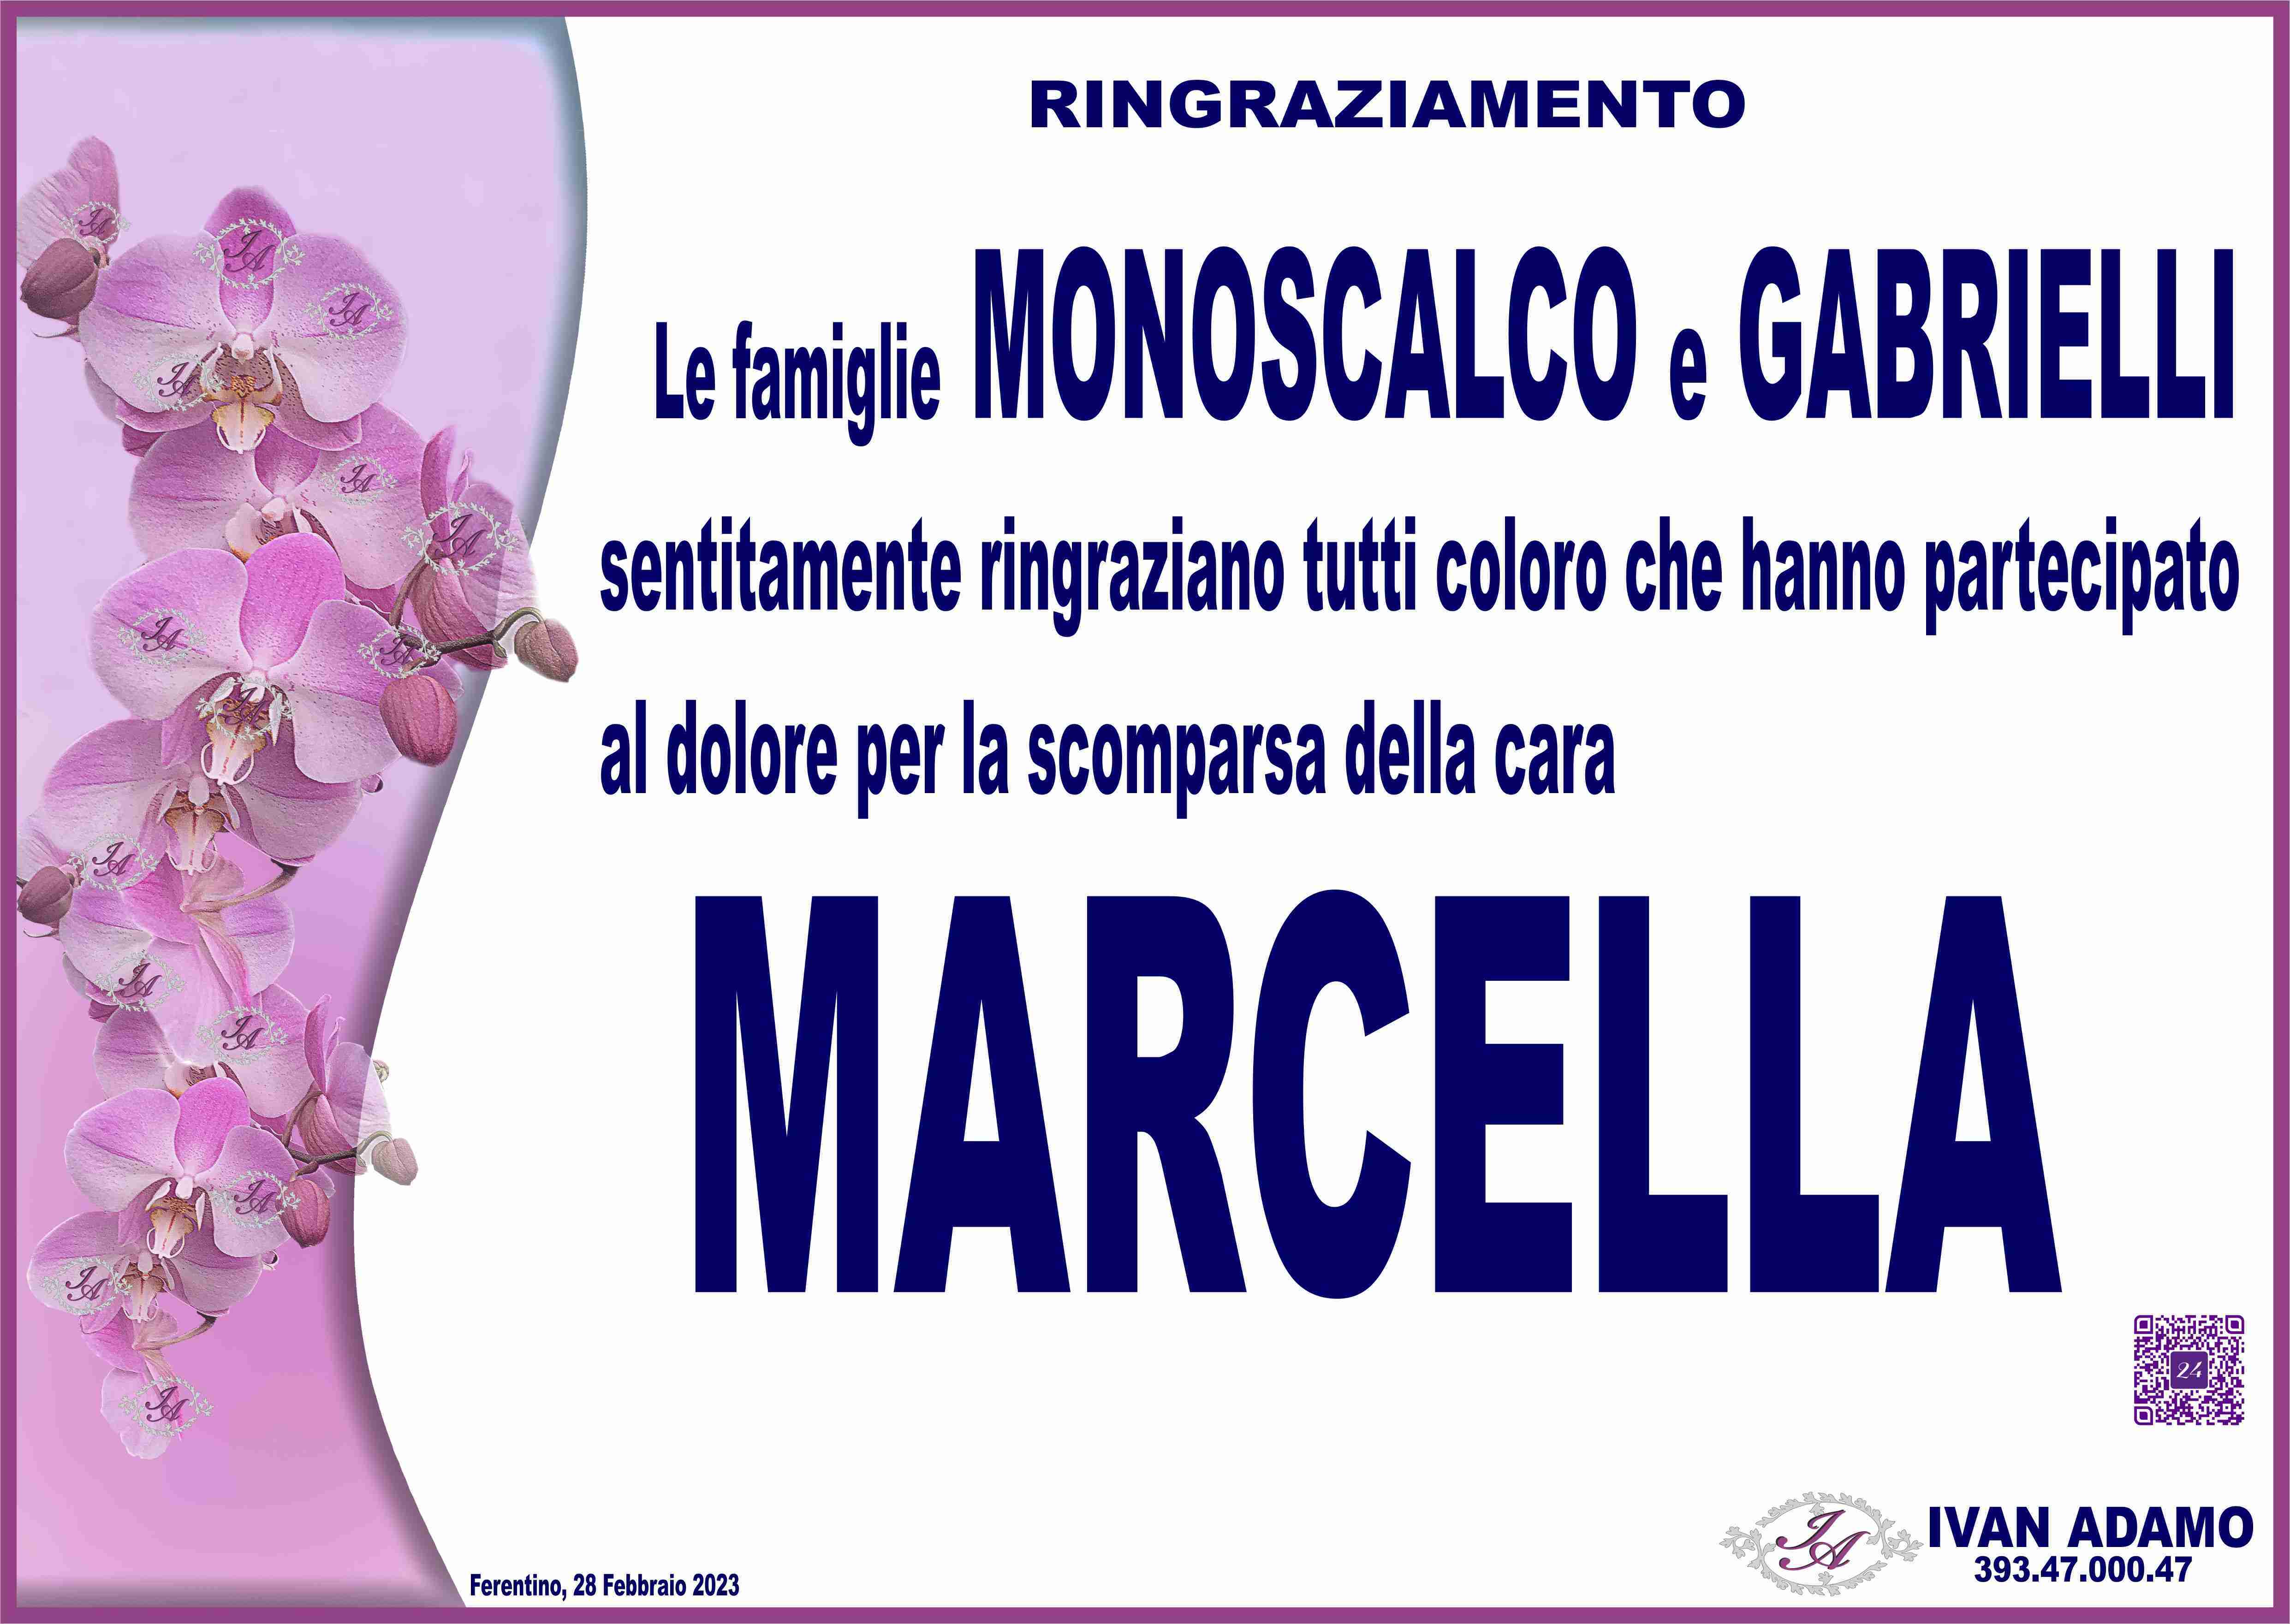 Marcella Gabrielli